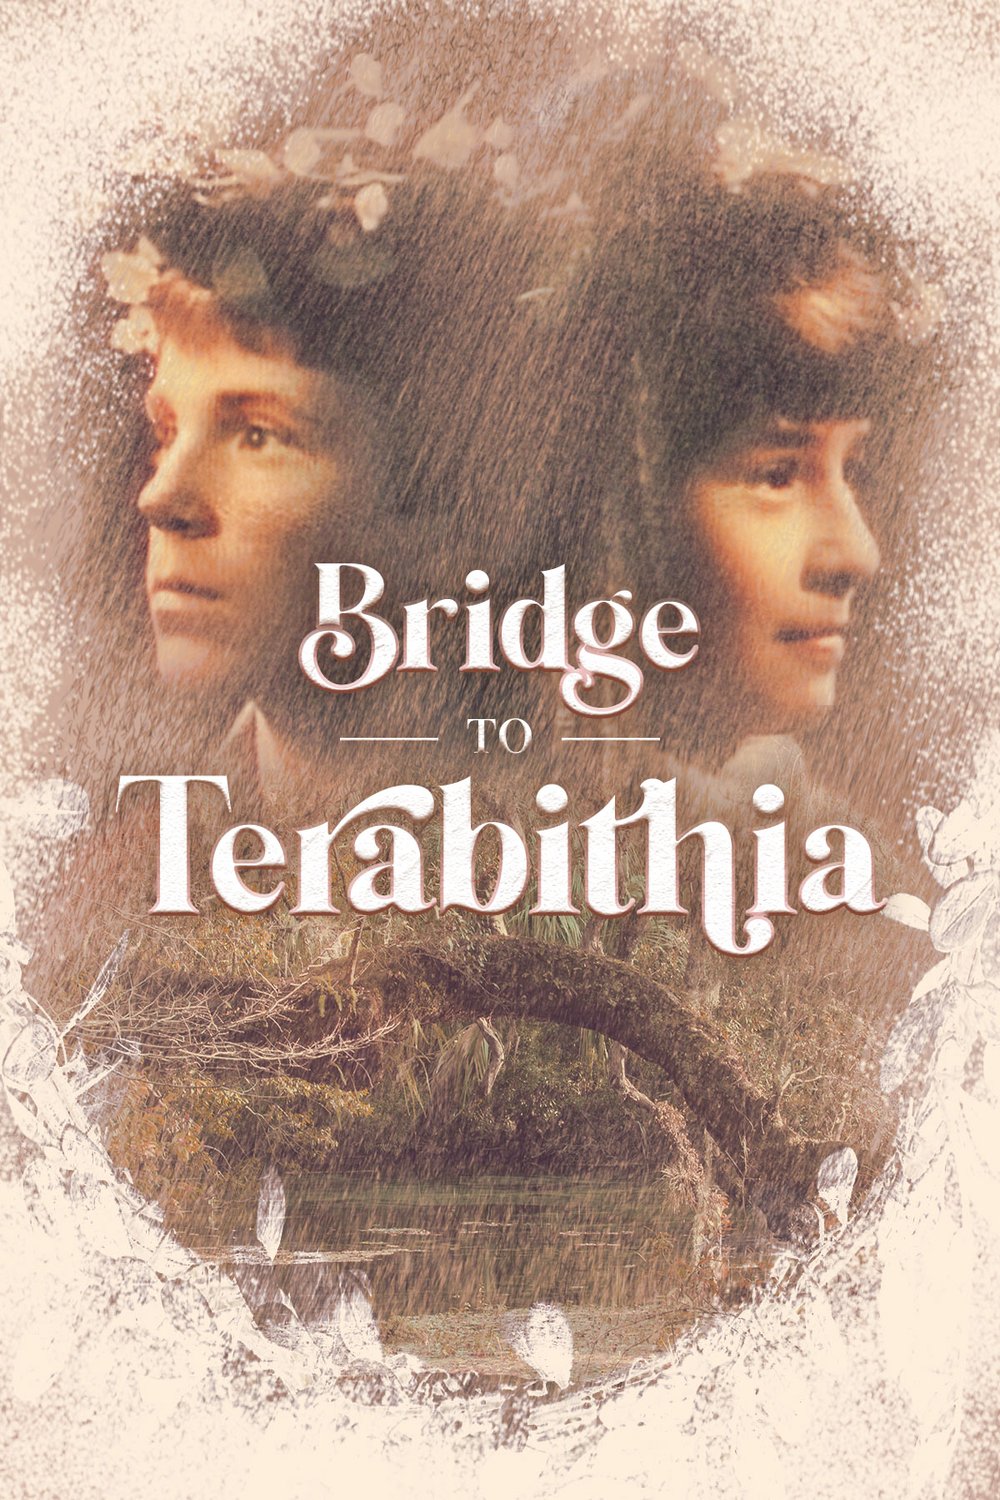 Poster of the movie Bridge to Terabithia